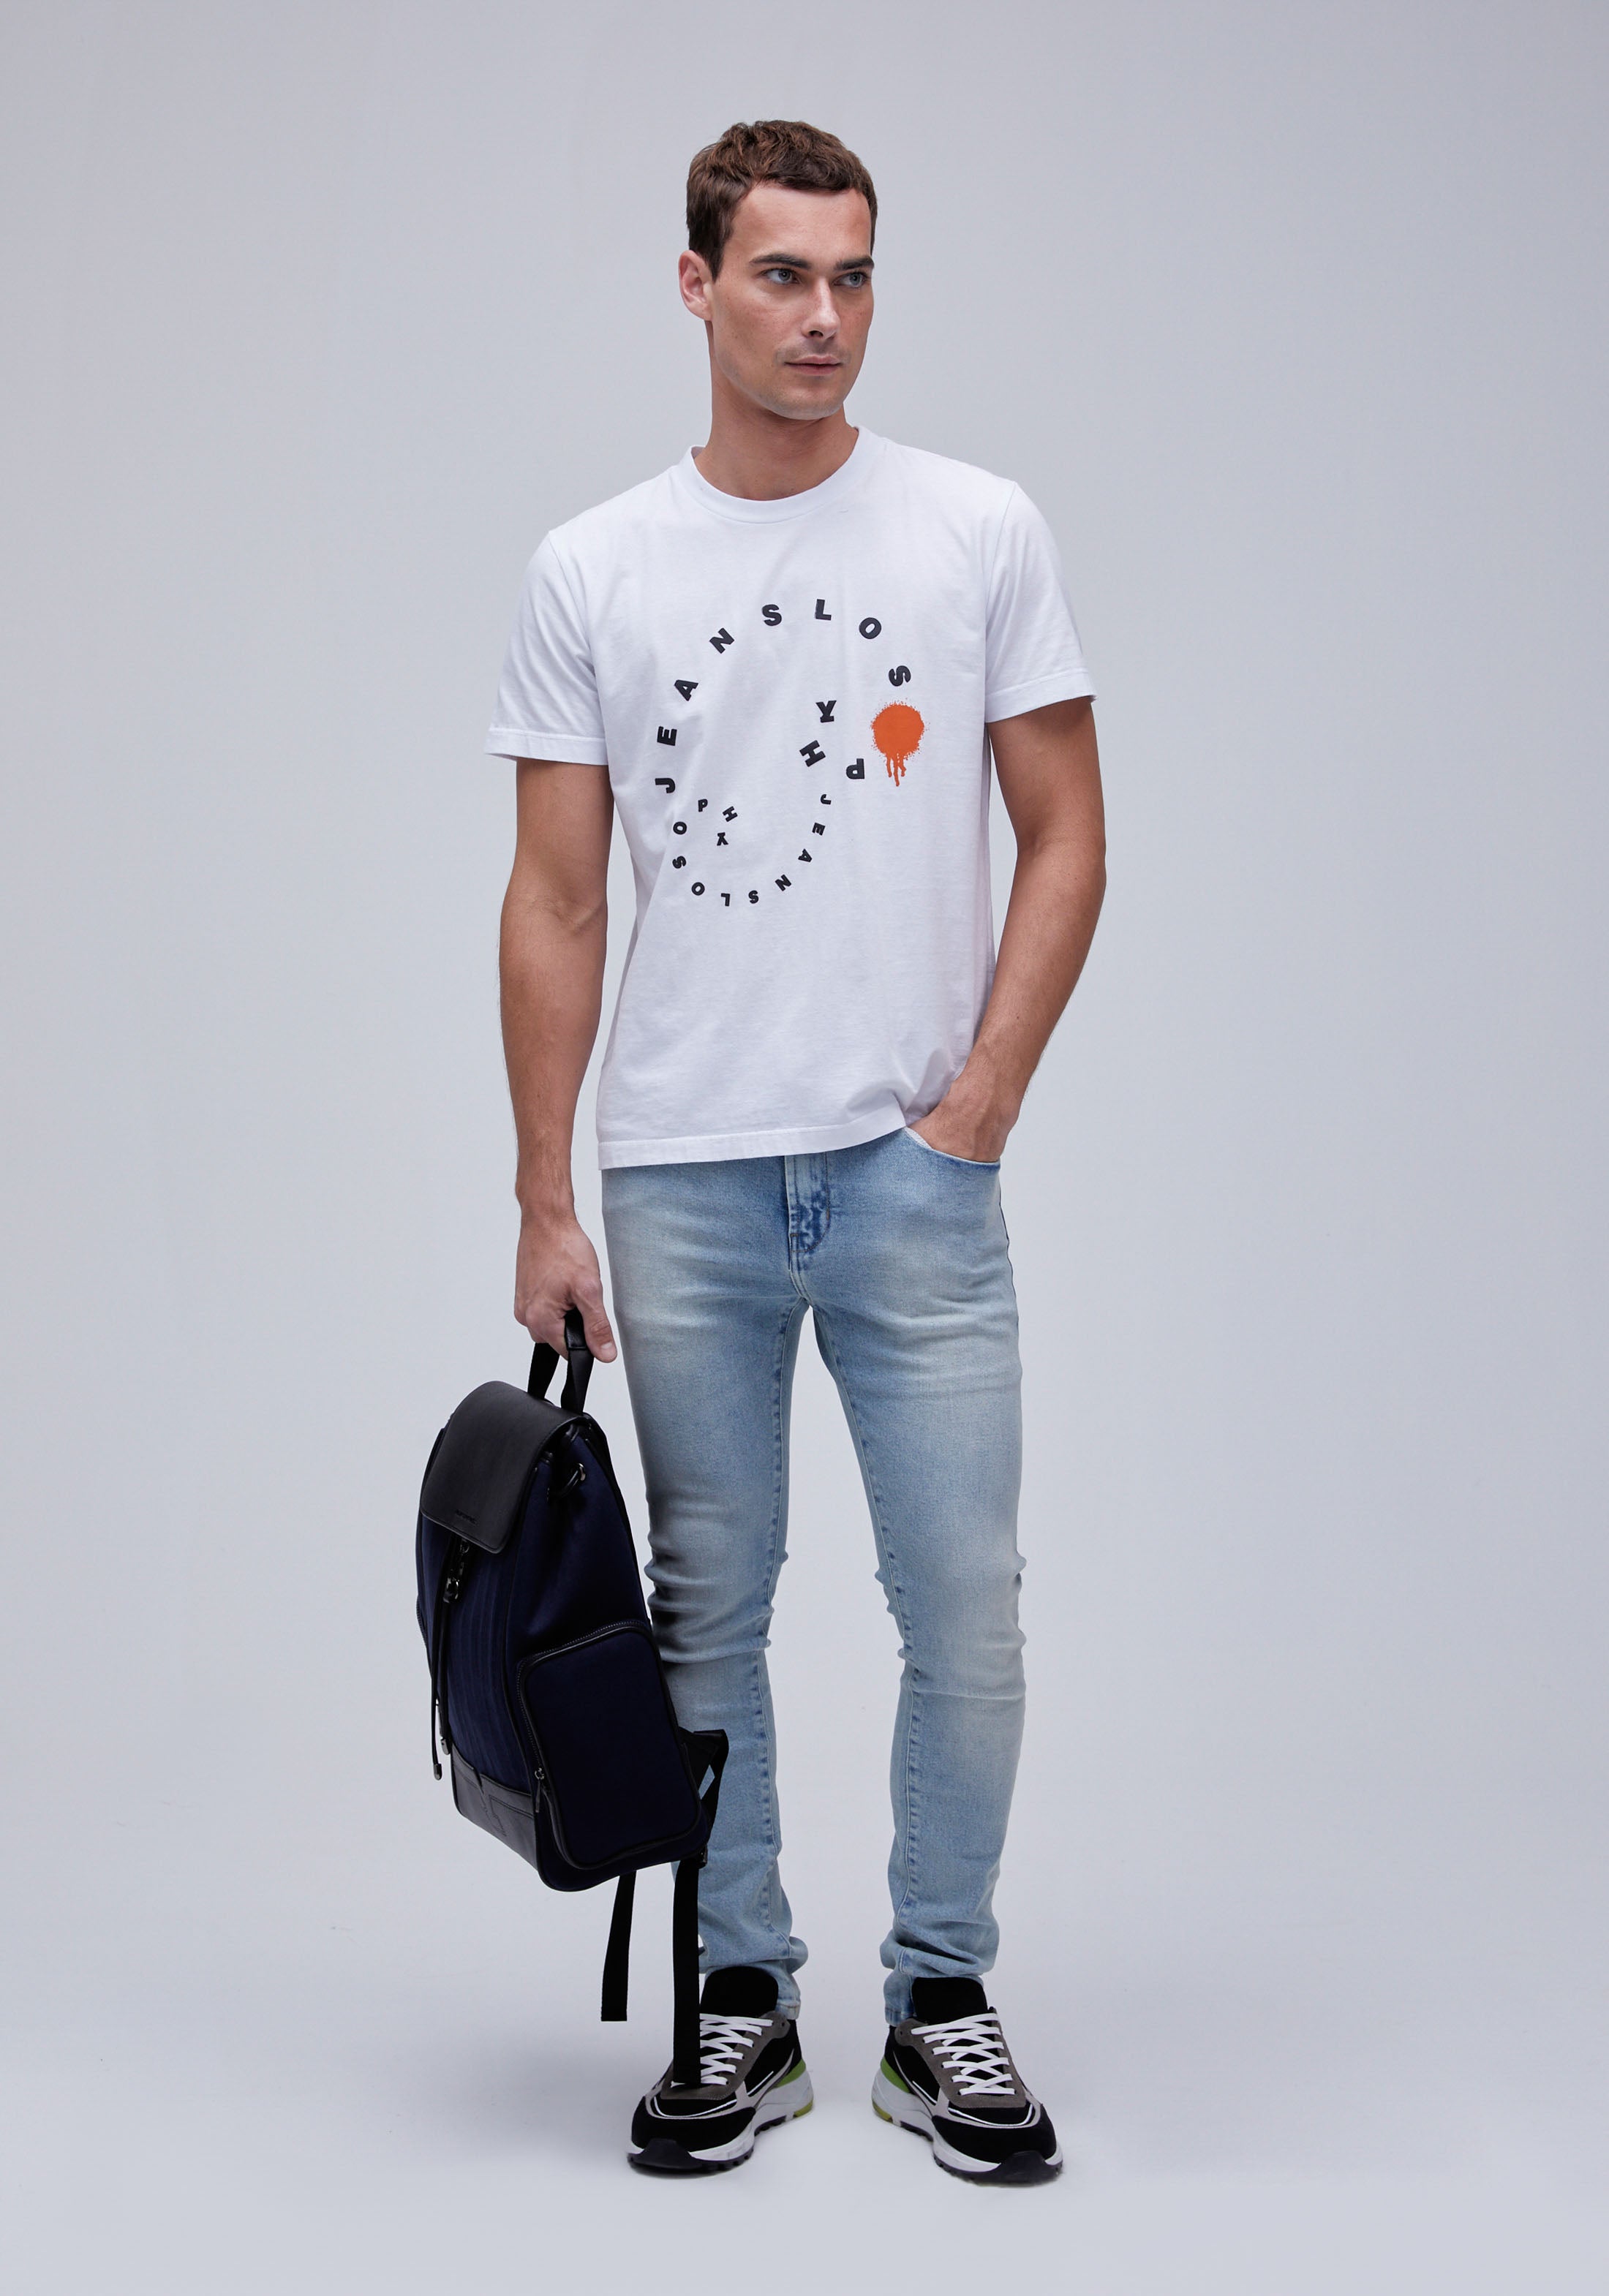 Calça Jeans Slim Com Aplicação - Loja His - Loja His - Moda Masculina:  Camisas Polo, Camisetas, Bermudas e Calças